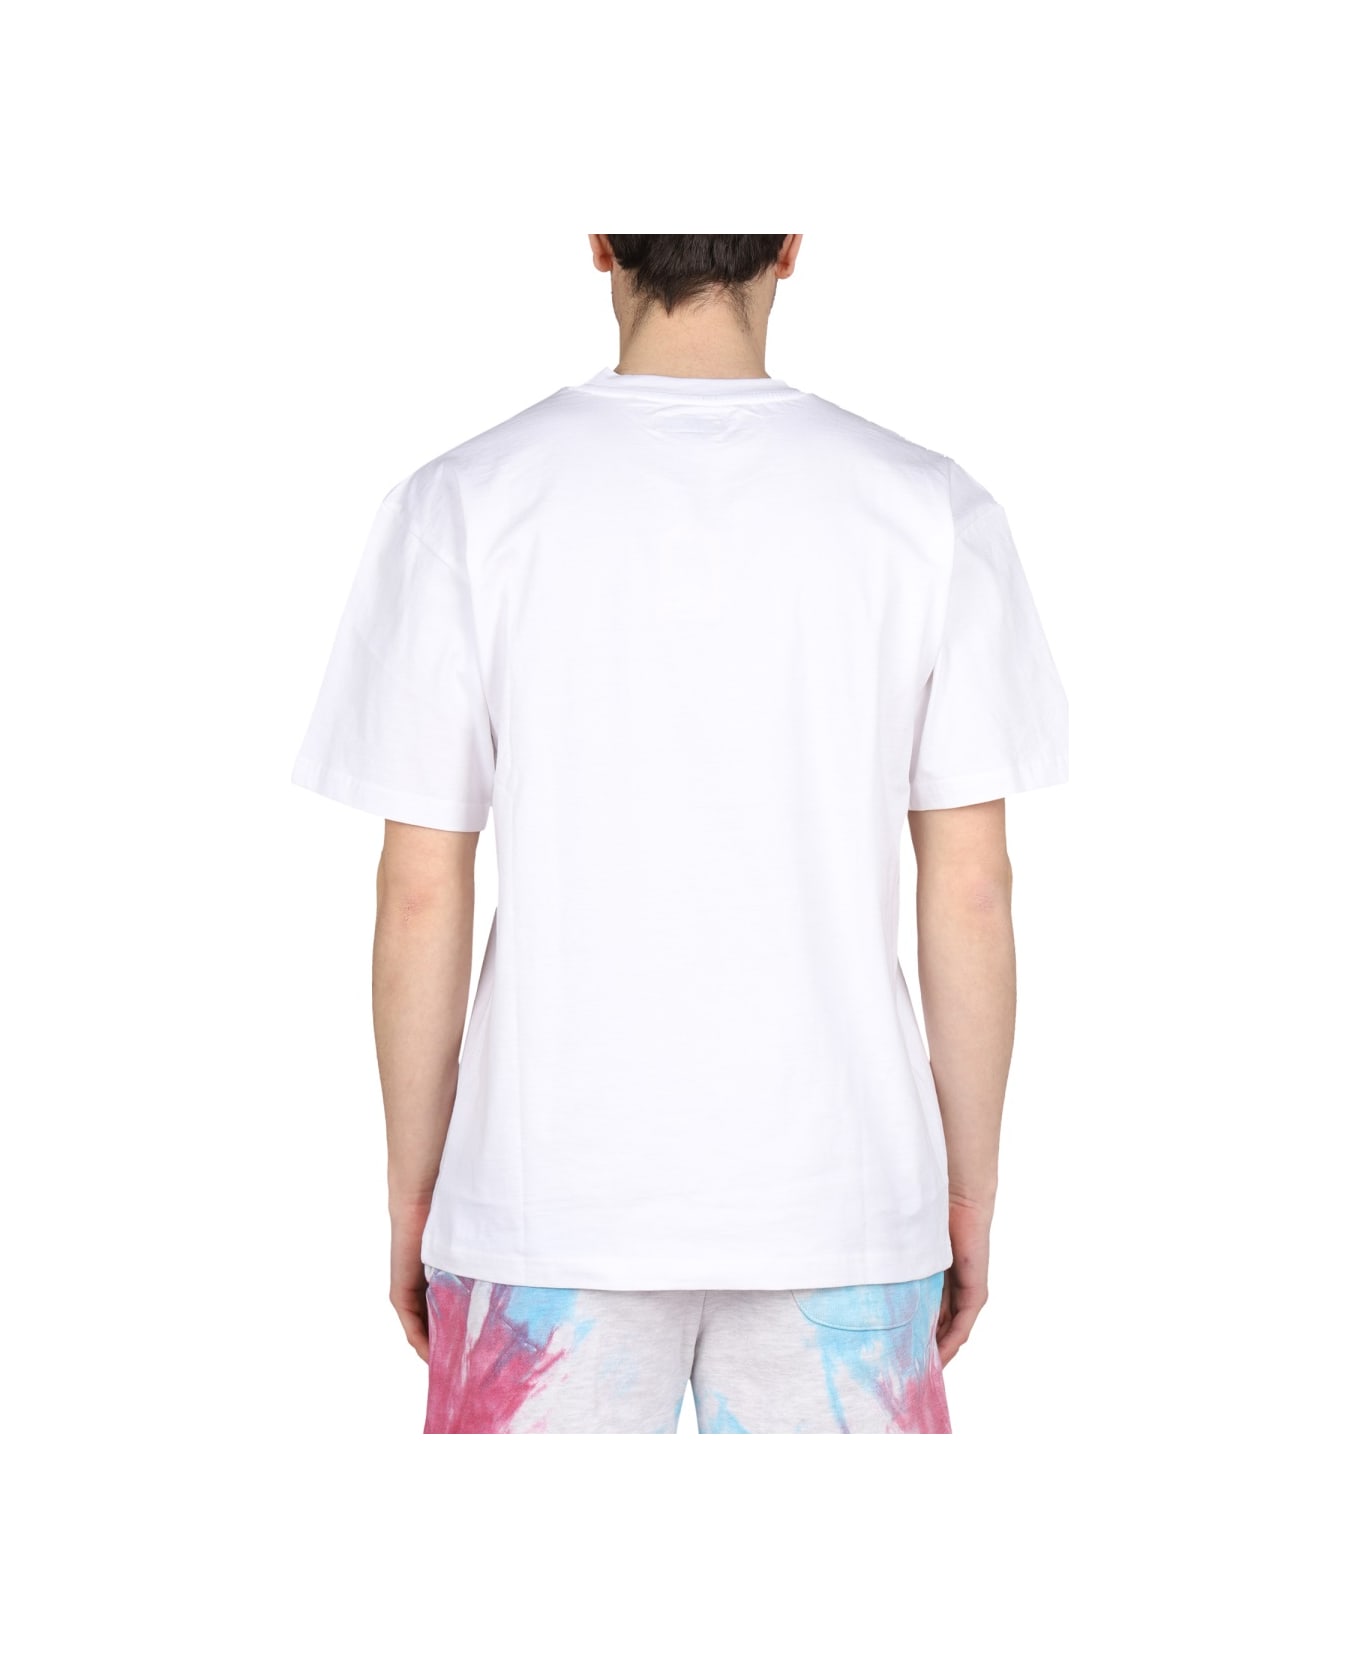 Market Logo Print T-shirt - WHITE Tシャツ